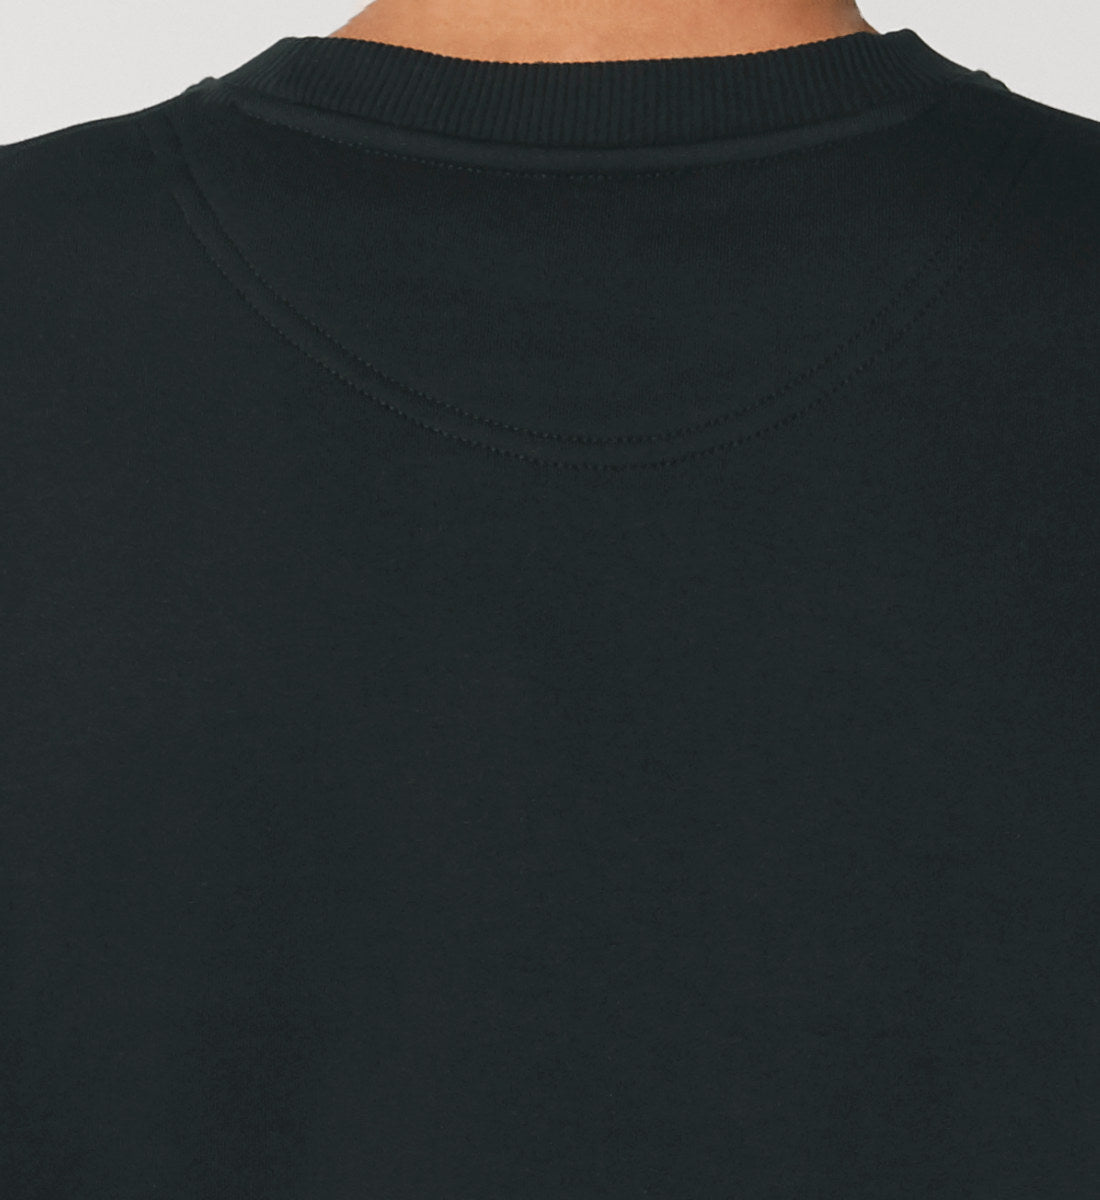 Schwarzes Sweatshirt Unisex für Frauen und Männer bedruckt mit dem Design der Roger Rockawoo Kollektion No Doubt